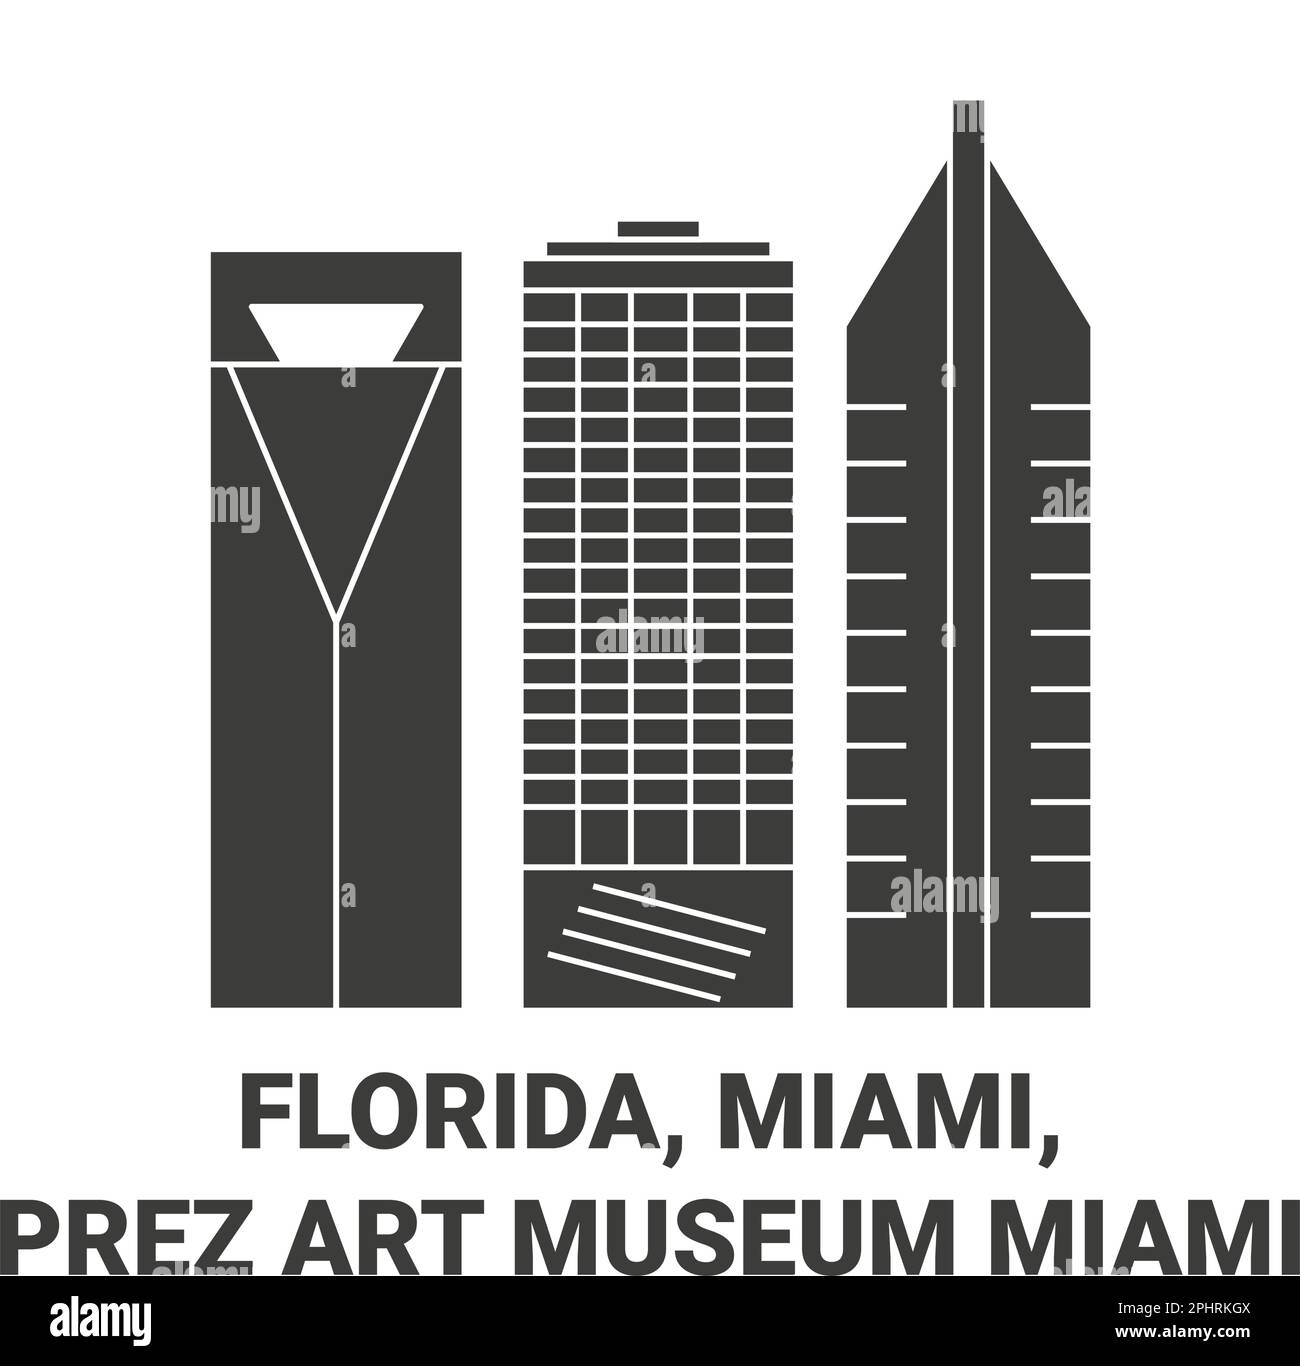 Stati Uniti, Florida, Miami, Prez Art Museum Miami viaggio punto di riferimento vettoriale illustrazione Illustrazione Vettoriale